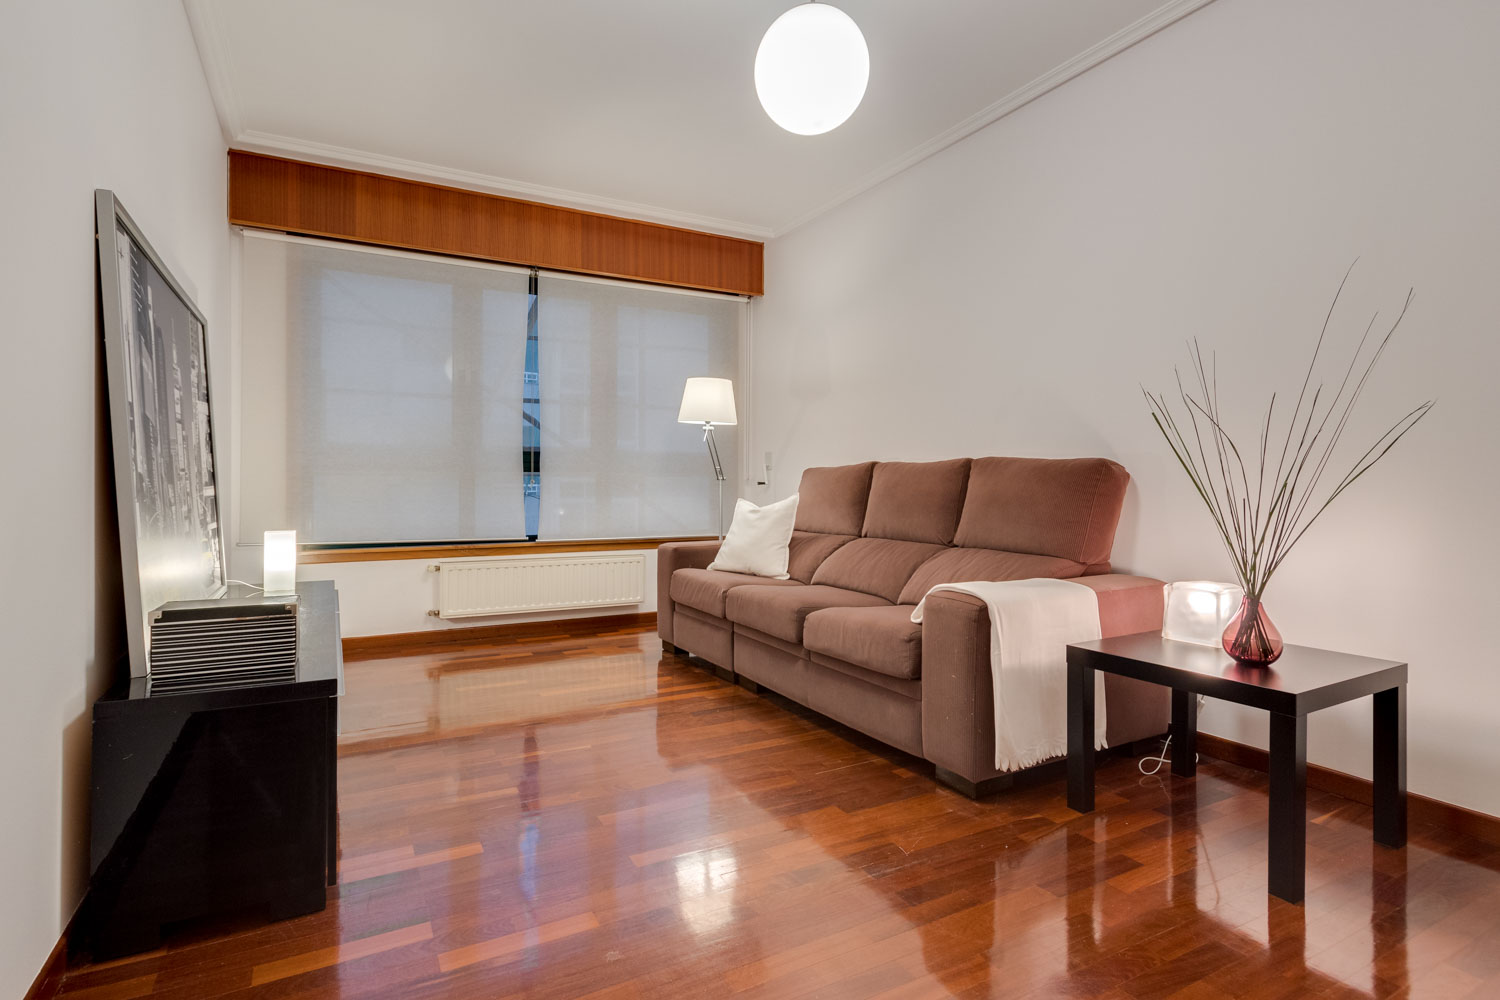 Salón preparado con Home Staging_ sofá gris y textiles claros